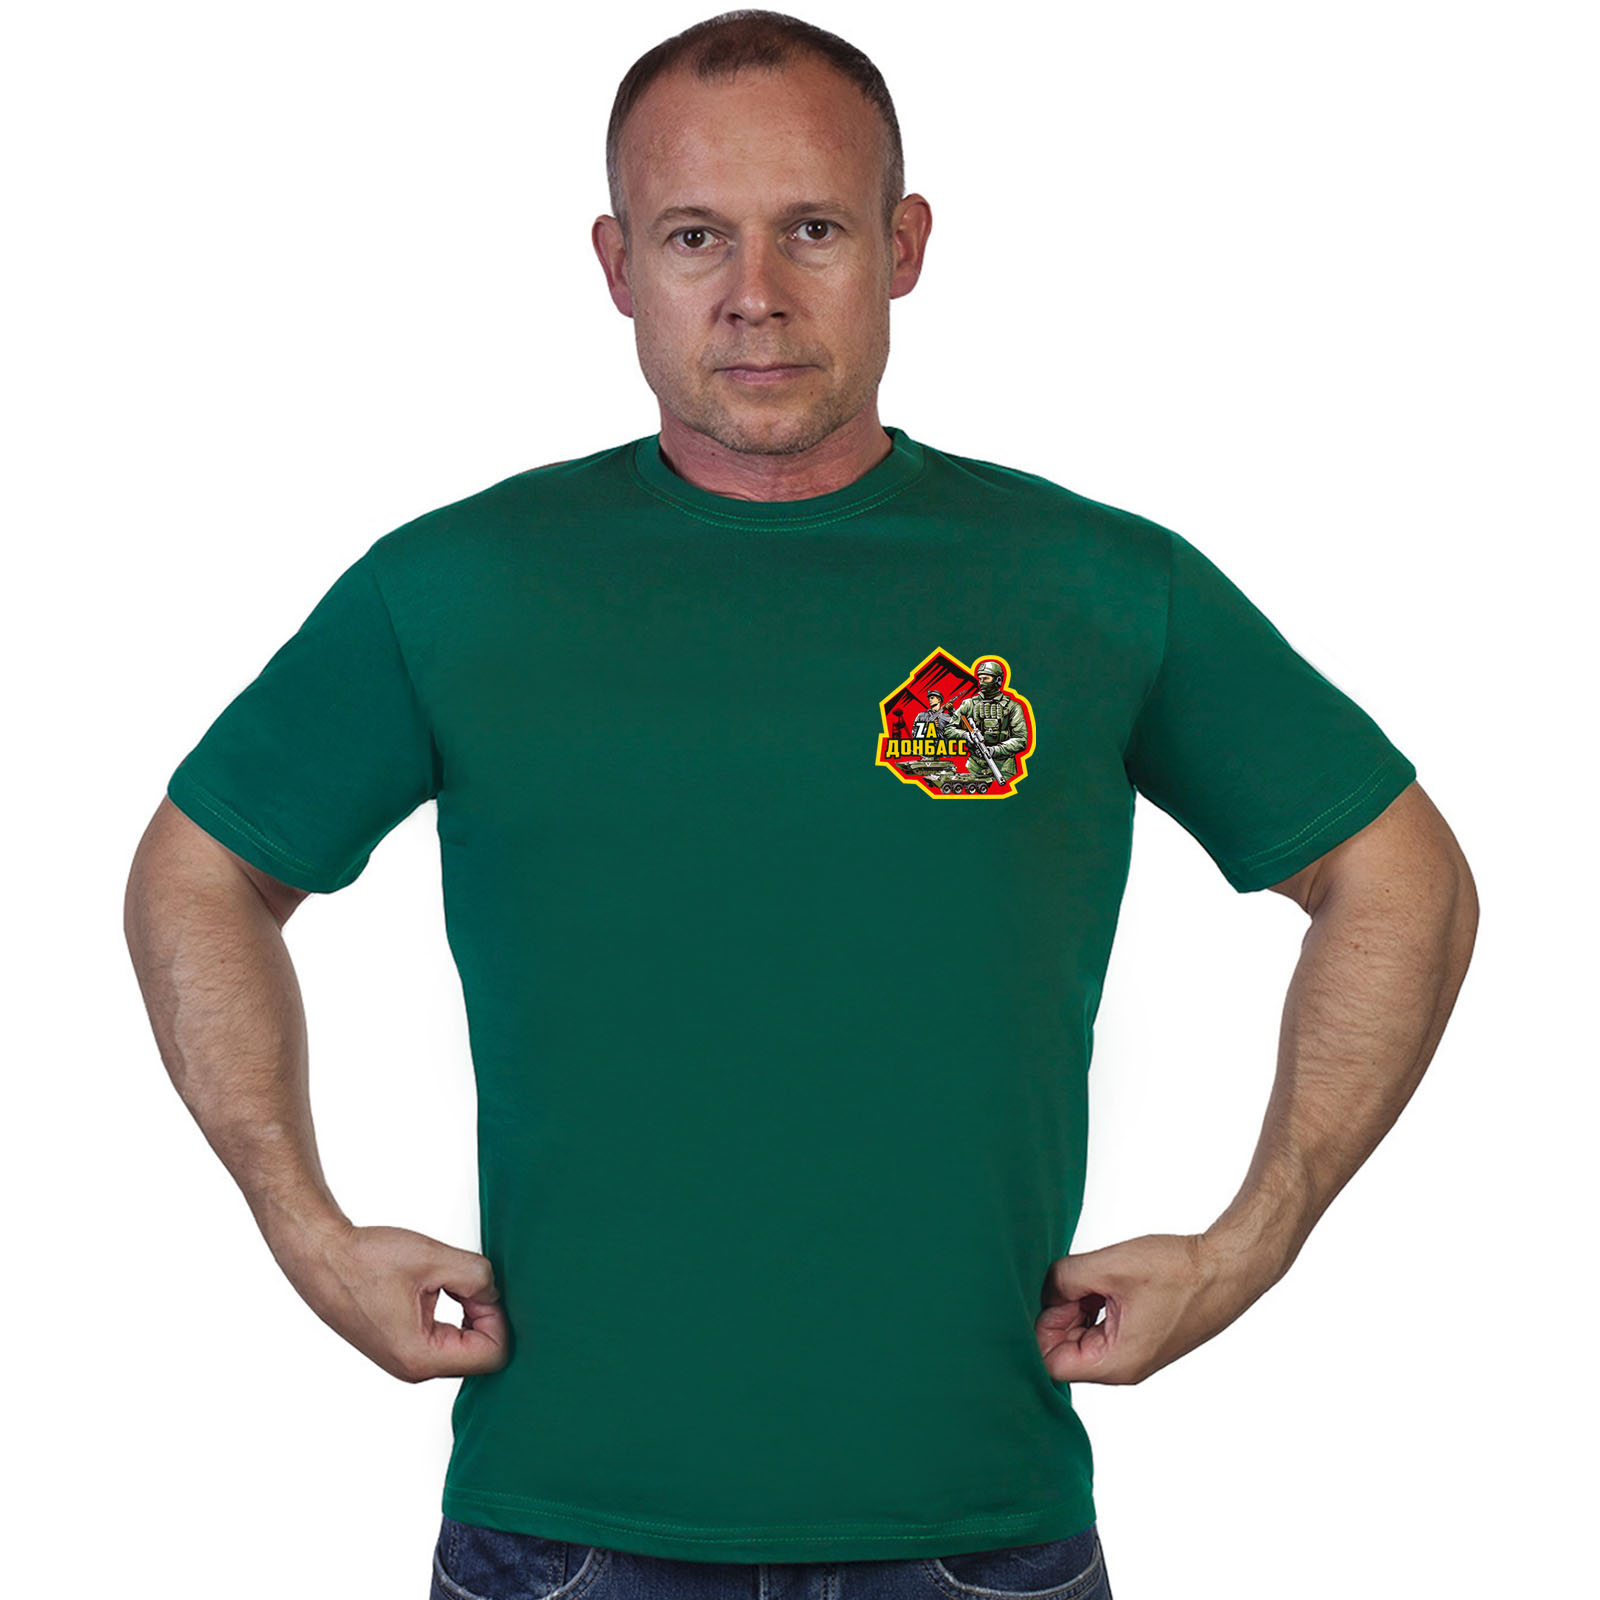 Зелёная футболка с термоаппликацией "Zа Донбасс"